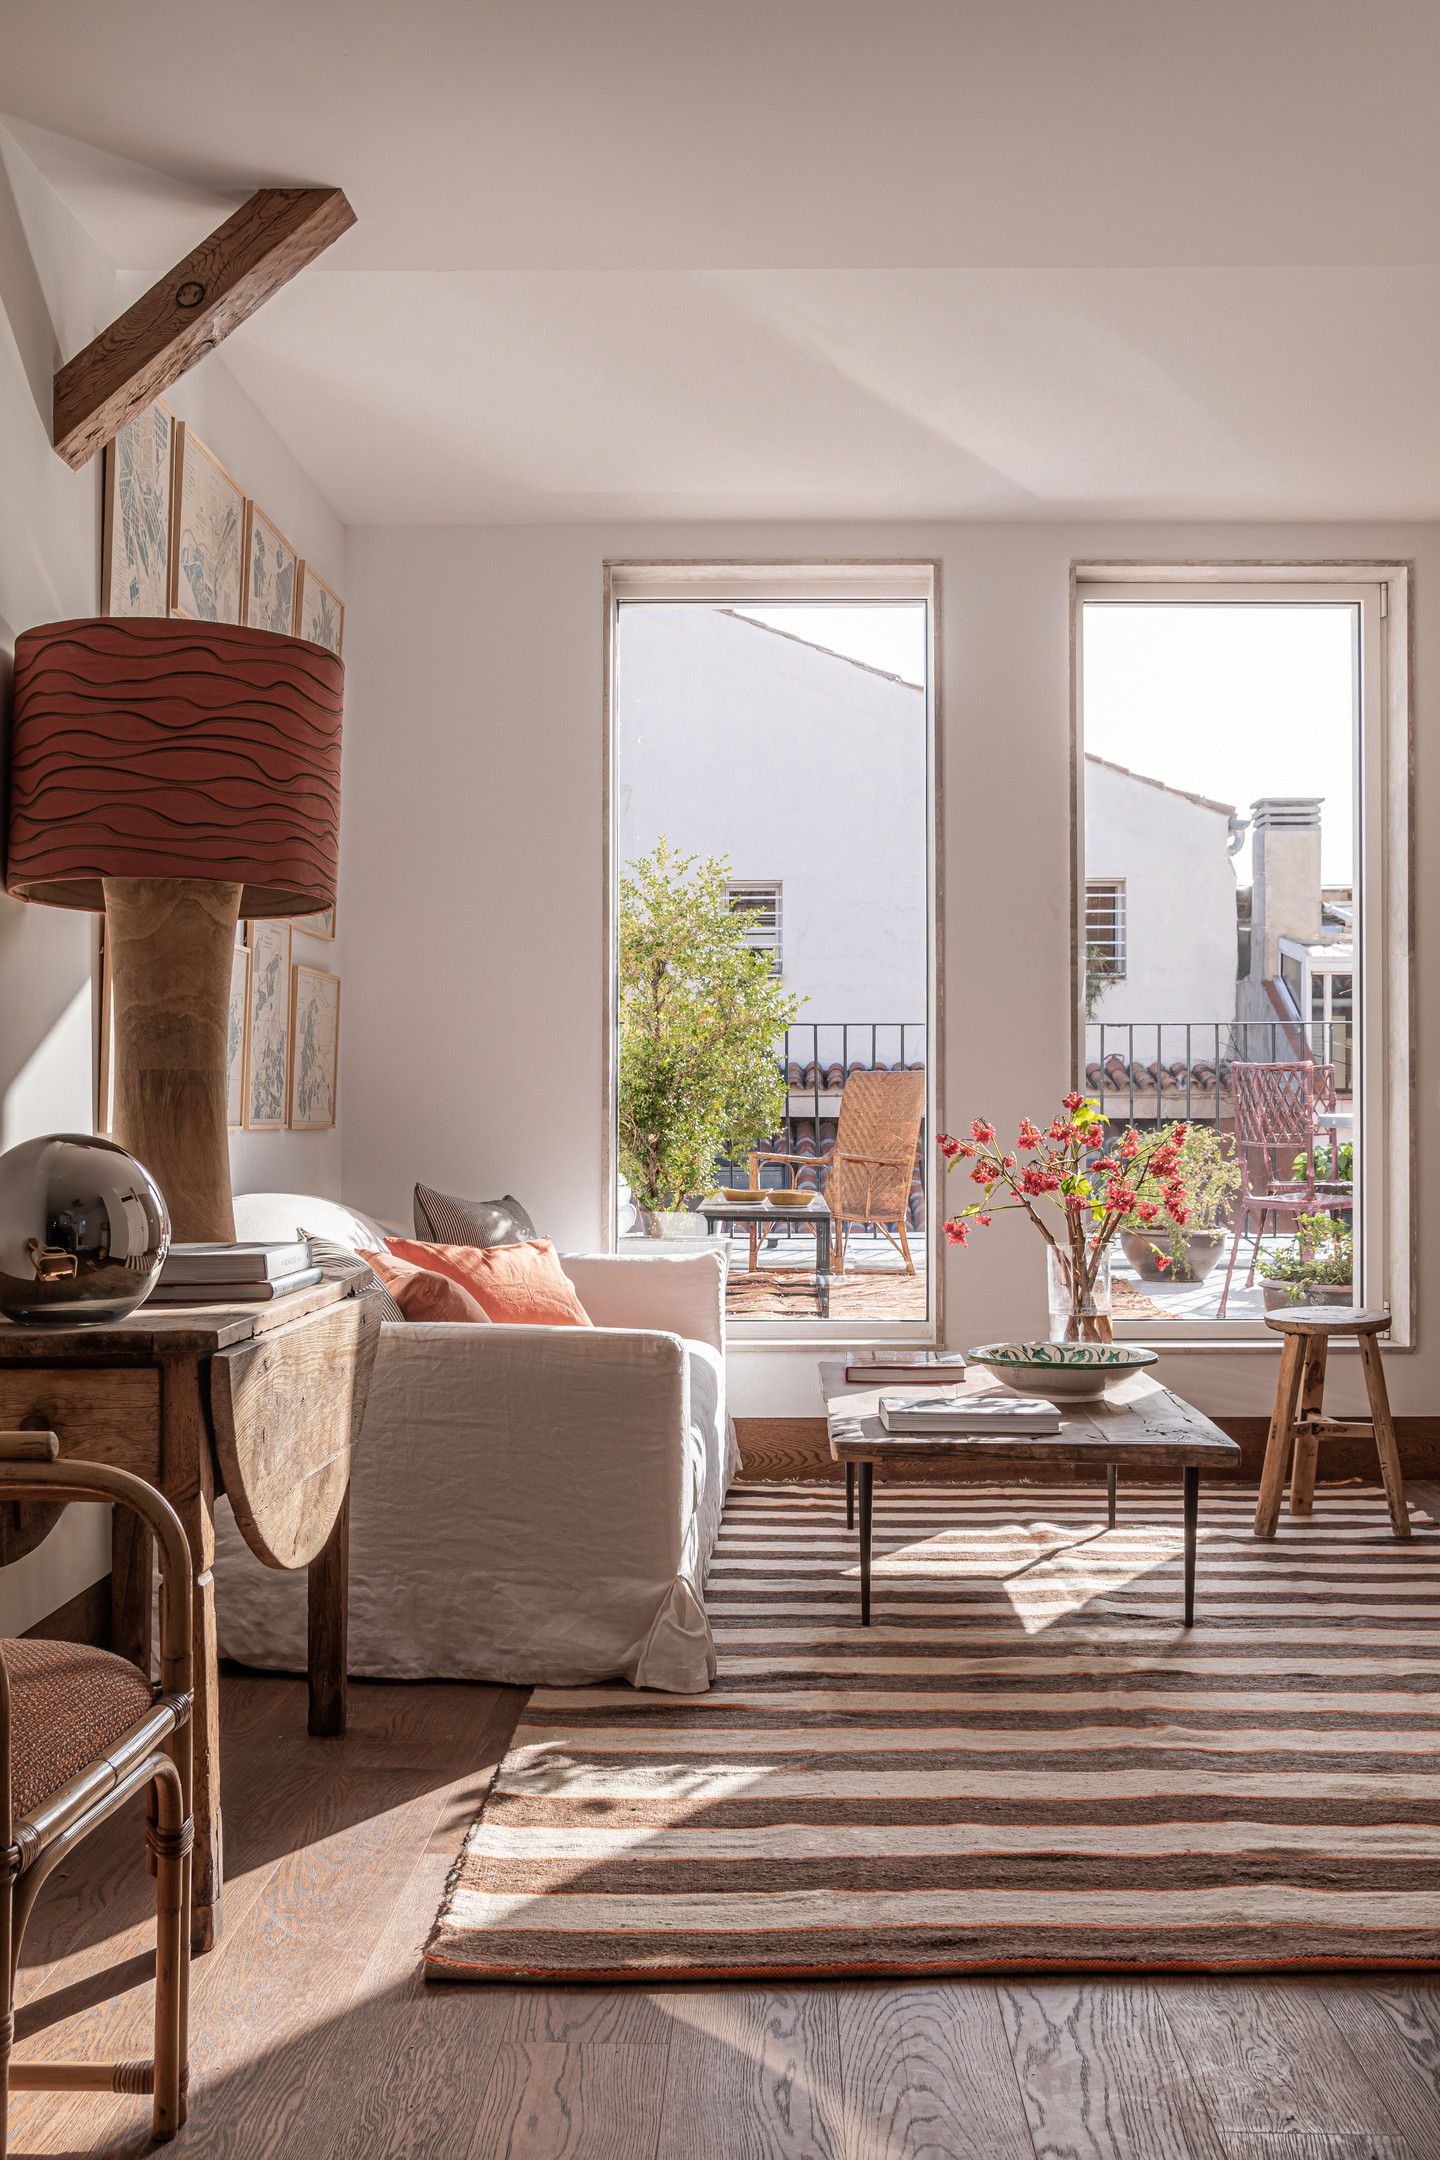 Nhiệm vụ của Espejo & Goyanes Studio là kết hợp 2 căn hộ riêng biệt thành một căn hộ thông tầng duy nhất với tổng diện tích 110m². Tại tầng 1, phòng khách - phòng bếp - khu vực ăn uống được thiết kế mở với sàn gỗ sồi sẫm màu trầm ấm.